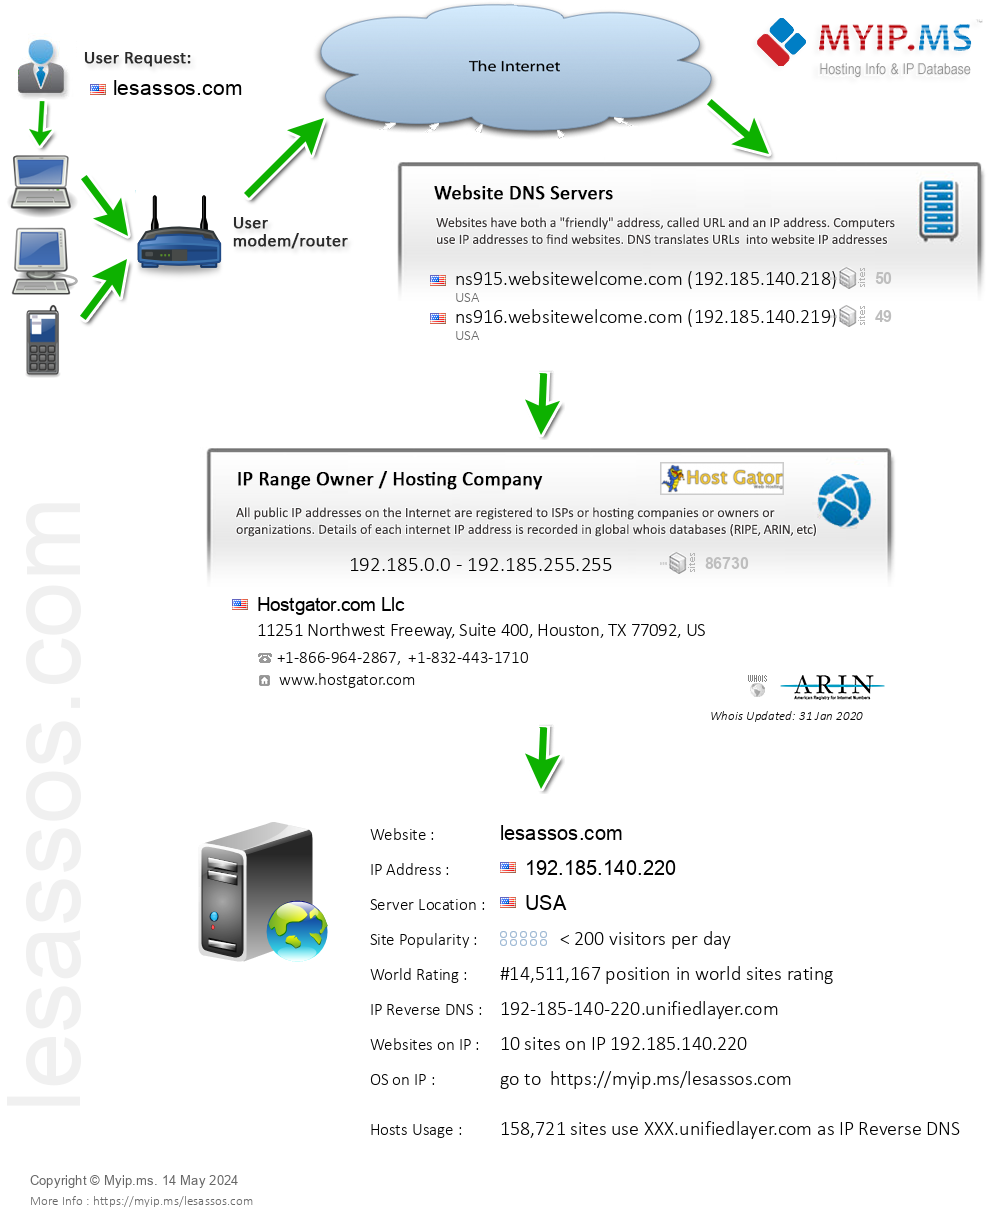 Lesassos.com - Website Hosting Visual IP Diagram